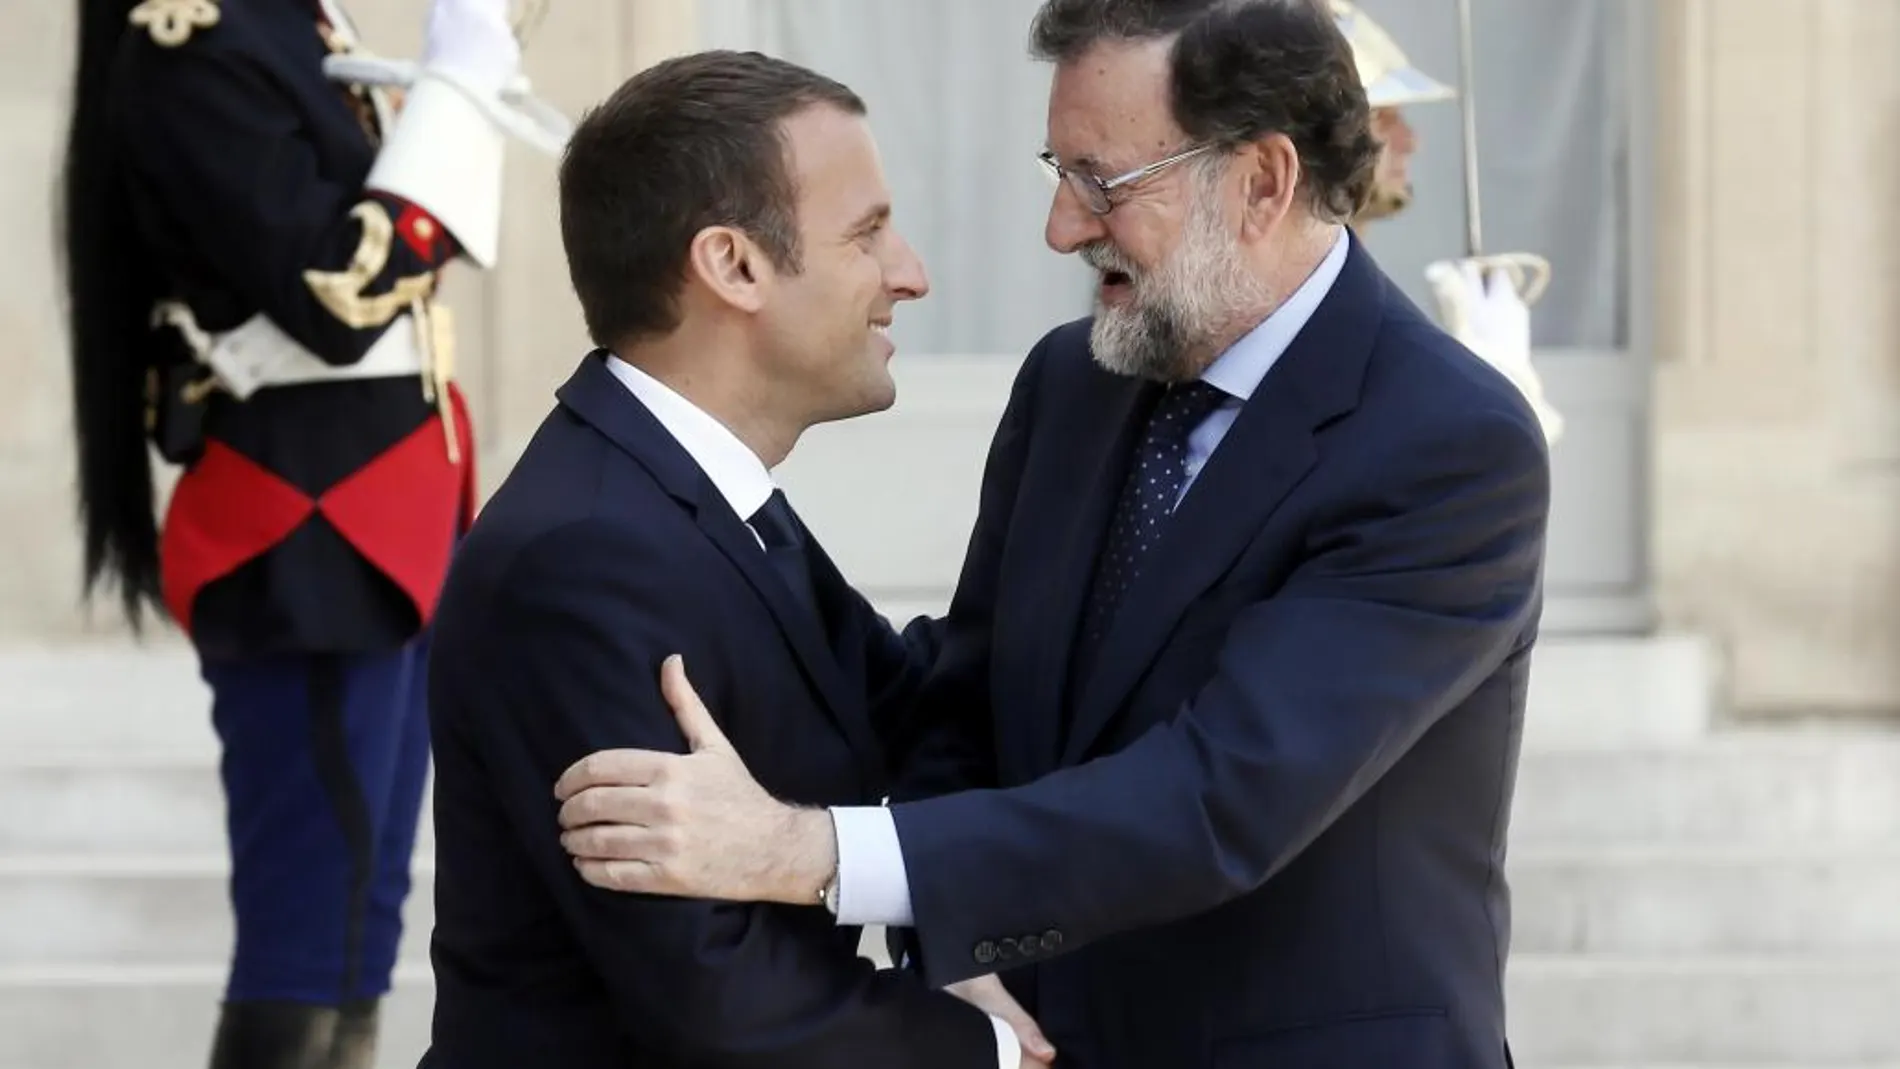 El presidente francés, Emmanuel Macron, da la bienvenida al jefe del Gobierno español, Mariano Rajoy, antes de su reunión en el palacio del Elíseo en París.